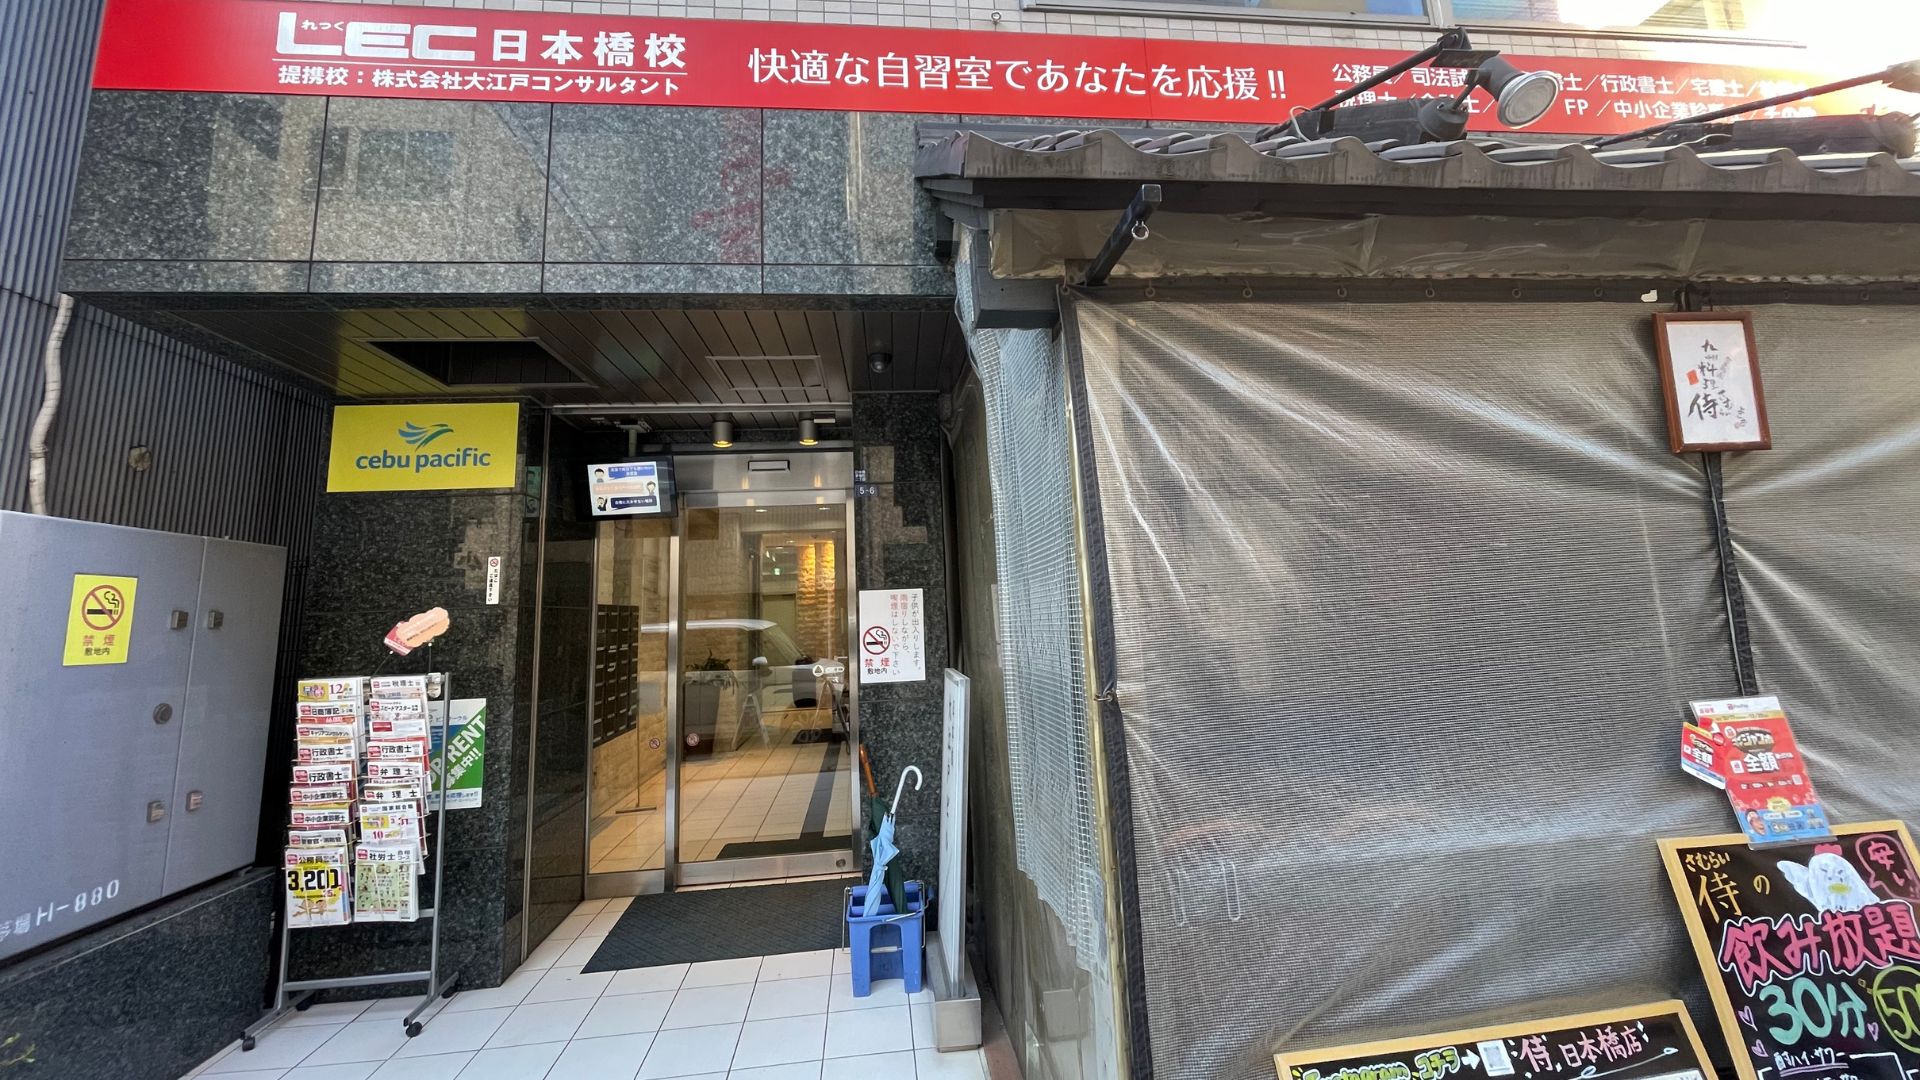 1階の飲食店「九州地魚料理 侍」が目印のビルです。